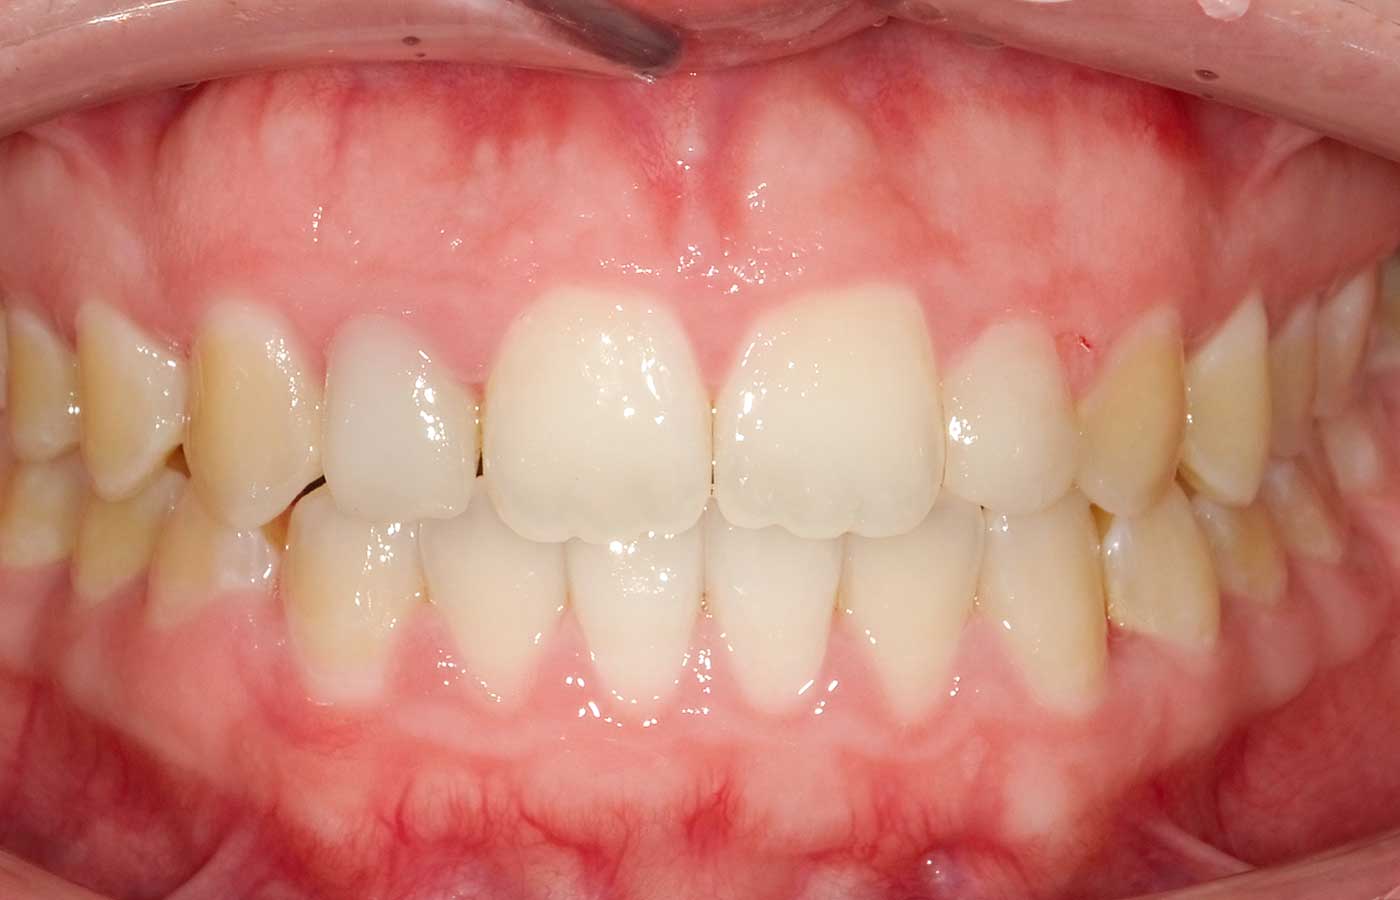 Trattamento ortodontico – Dopo